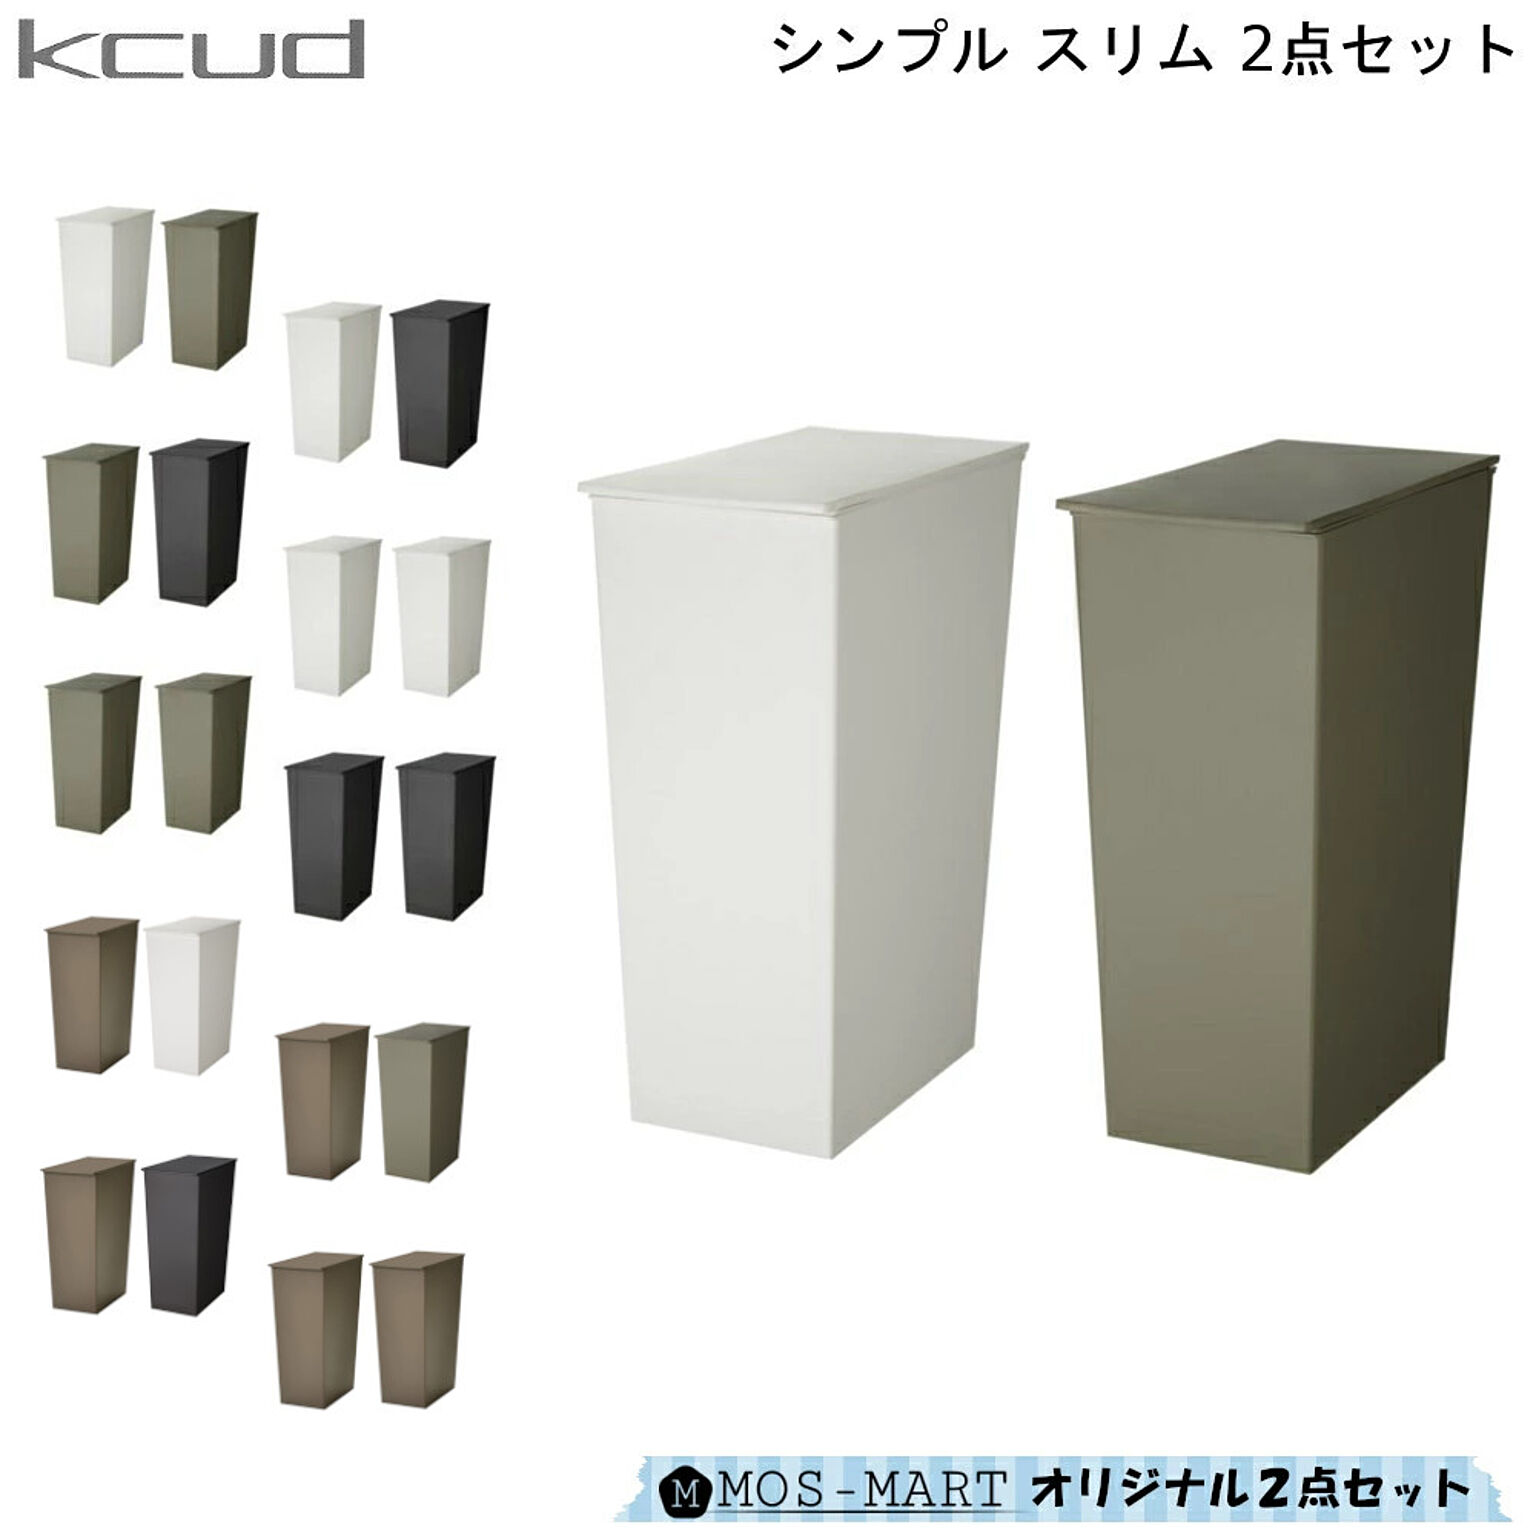 岩谷マテリアル KCUD シンプルスリム ダストボックス セット2個 ホワイト×グレー